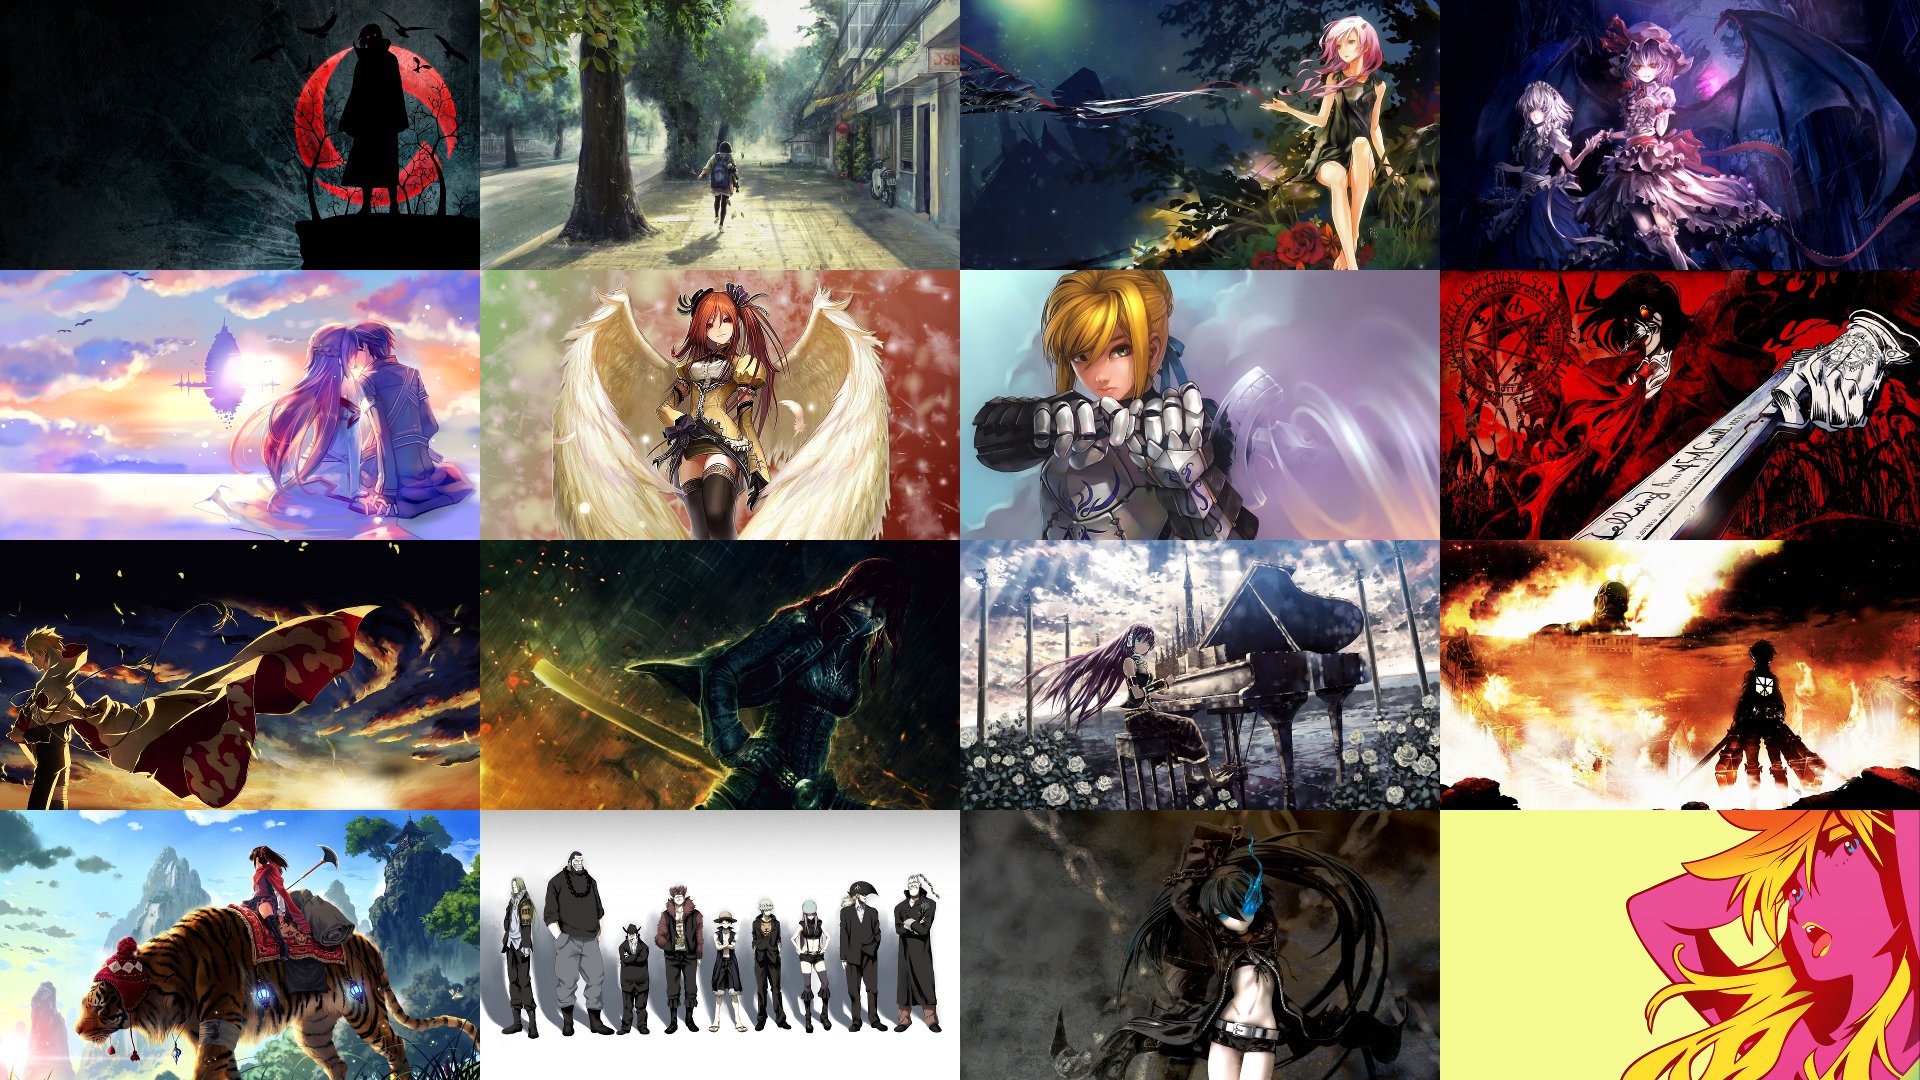 fondo de pantalla de animes hd,juego de acción y aventura,juegos,arte,cg artwork,diseño gráfico